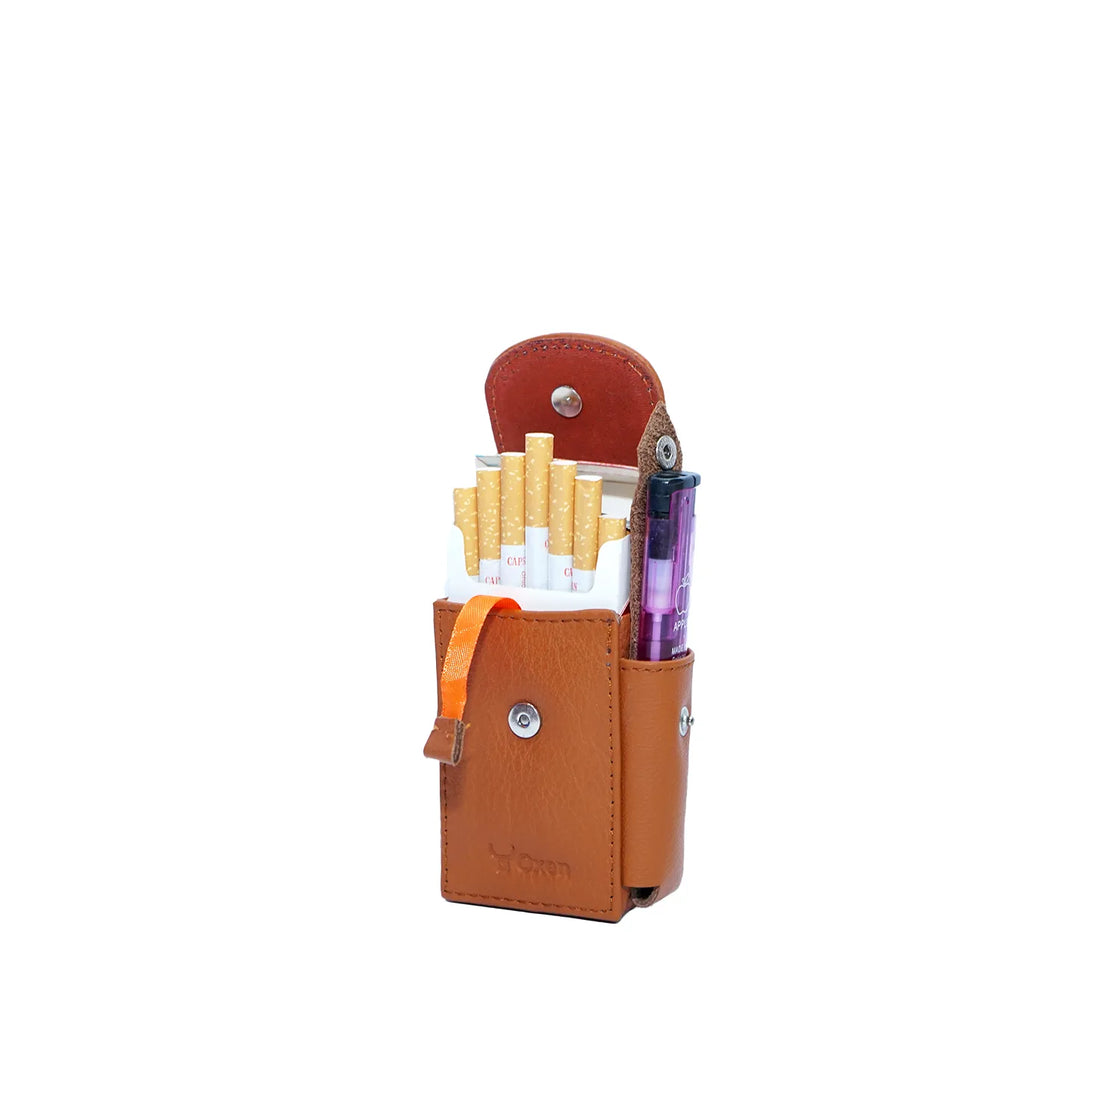 Orion Brown Leather Cigarette Case